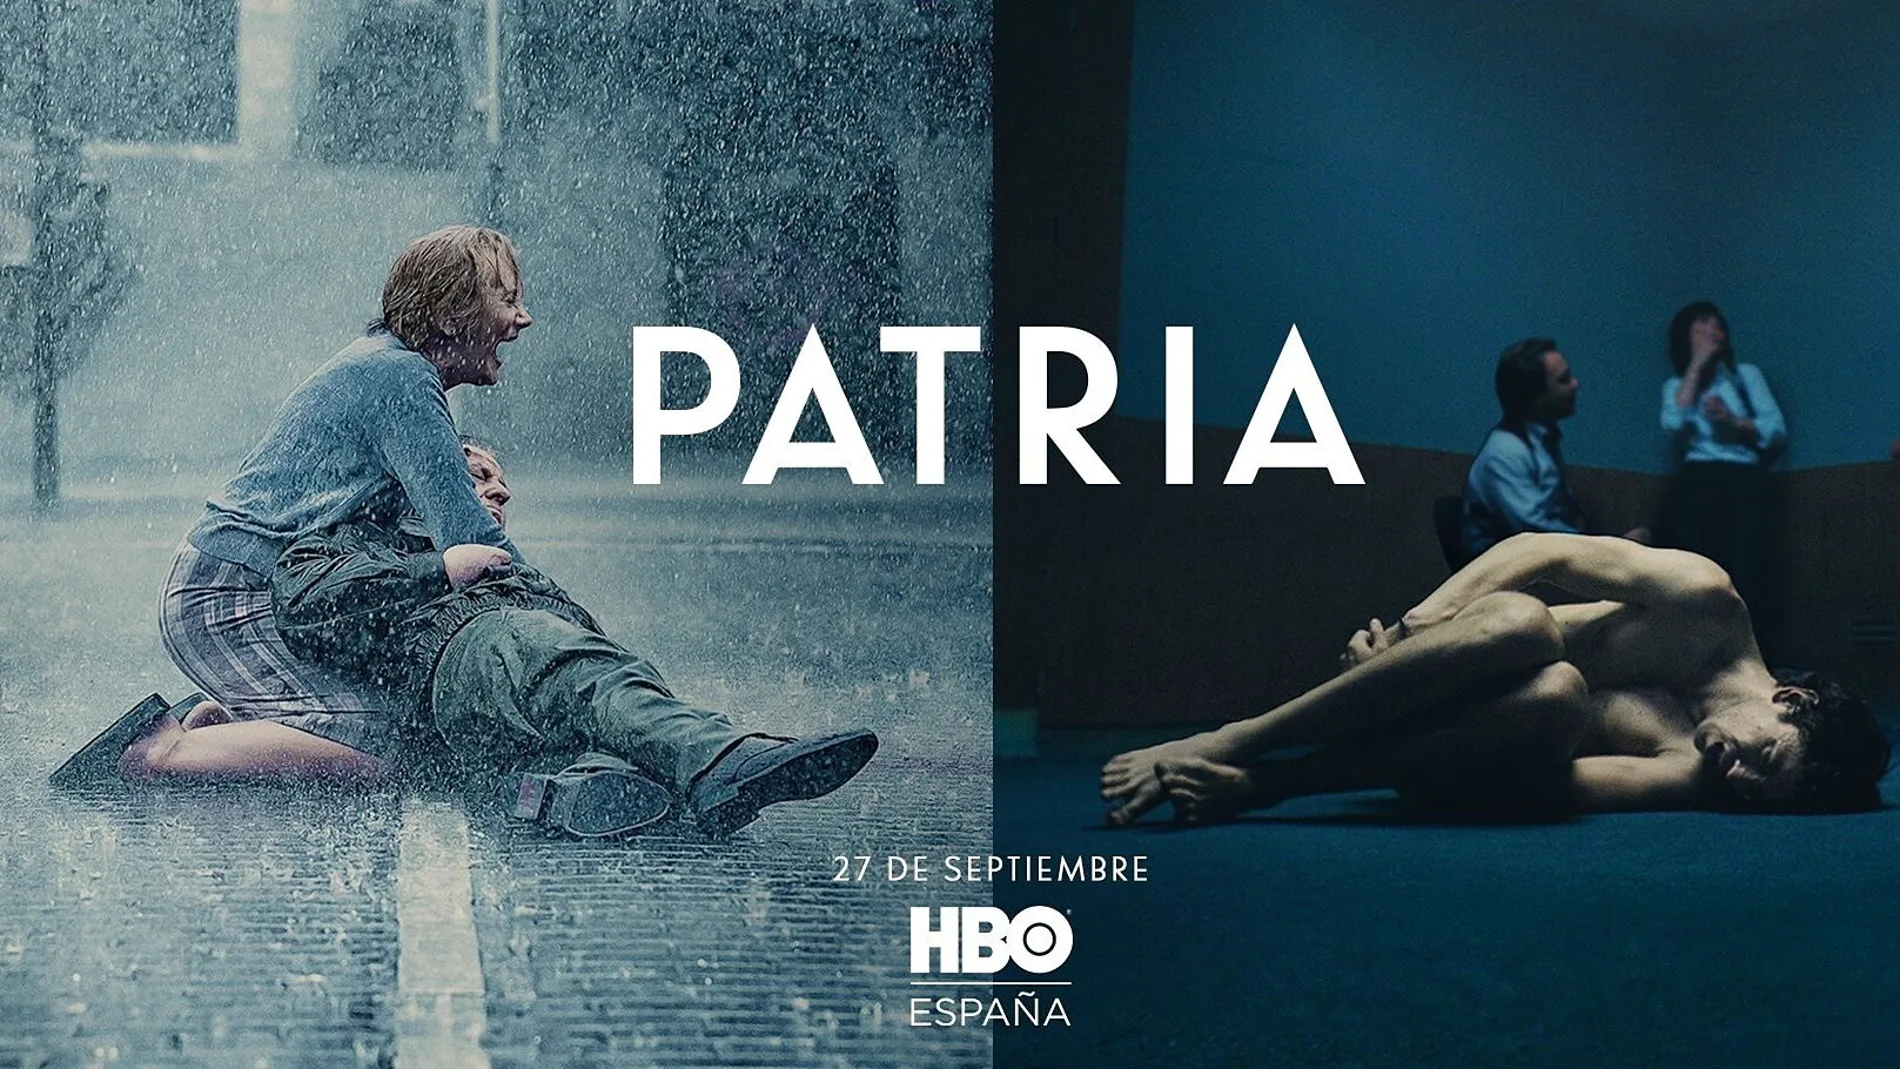 Cartel promocional de "Patria"